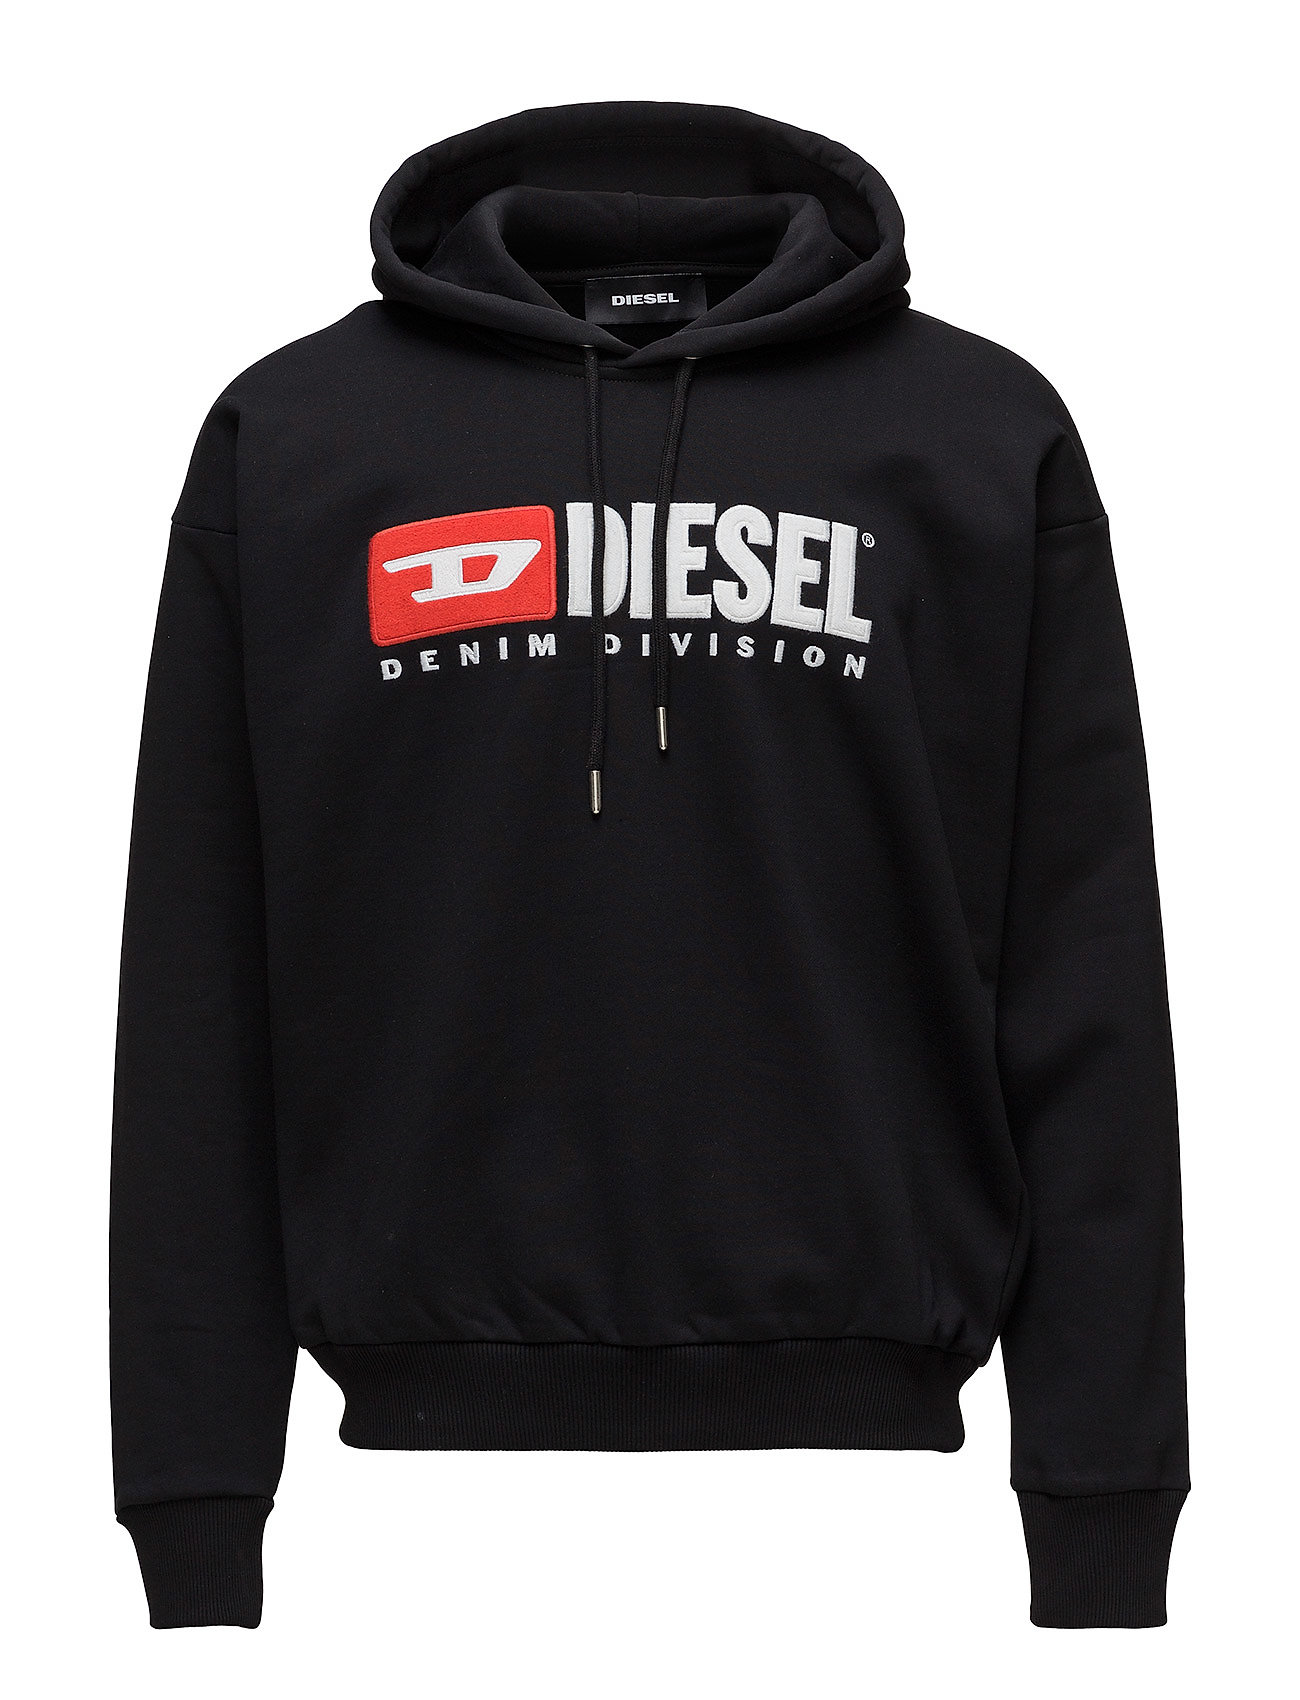 Aanbieding: Diesel Heren Sweatshirt S Crew Division Sweat Shirt Grijs ...